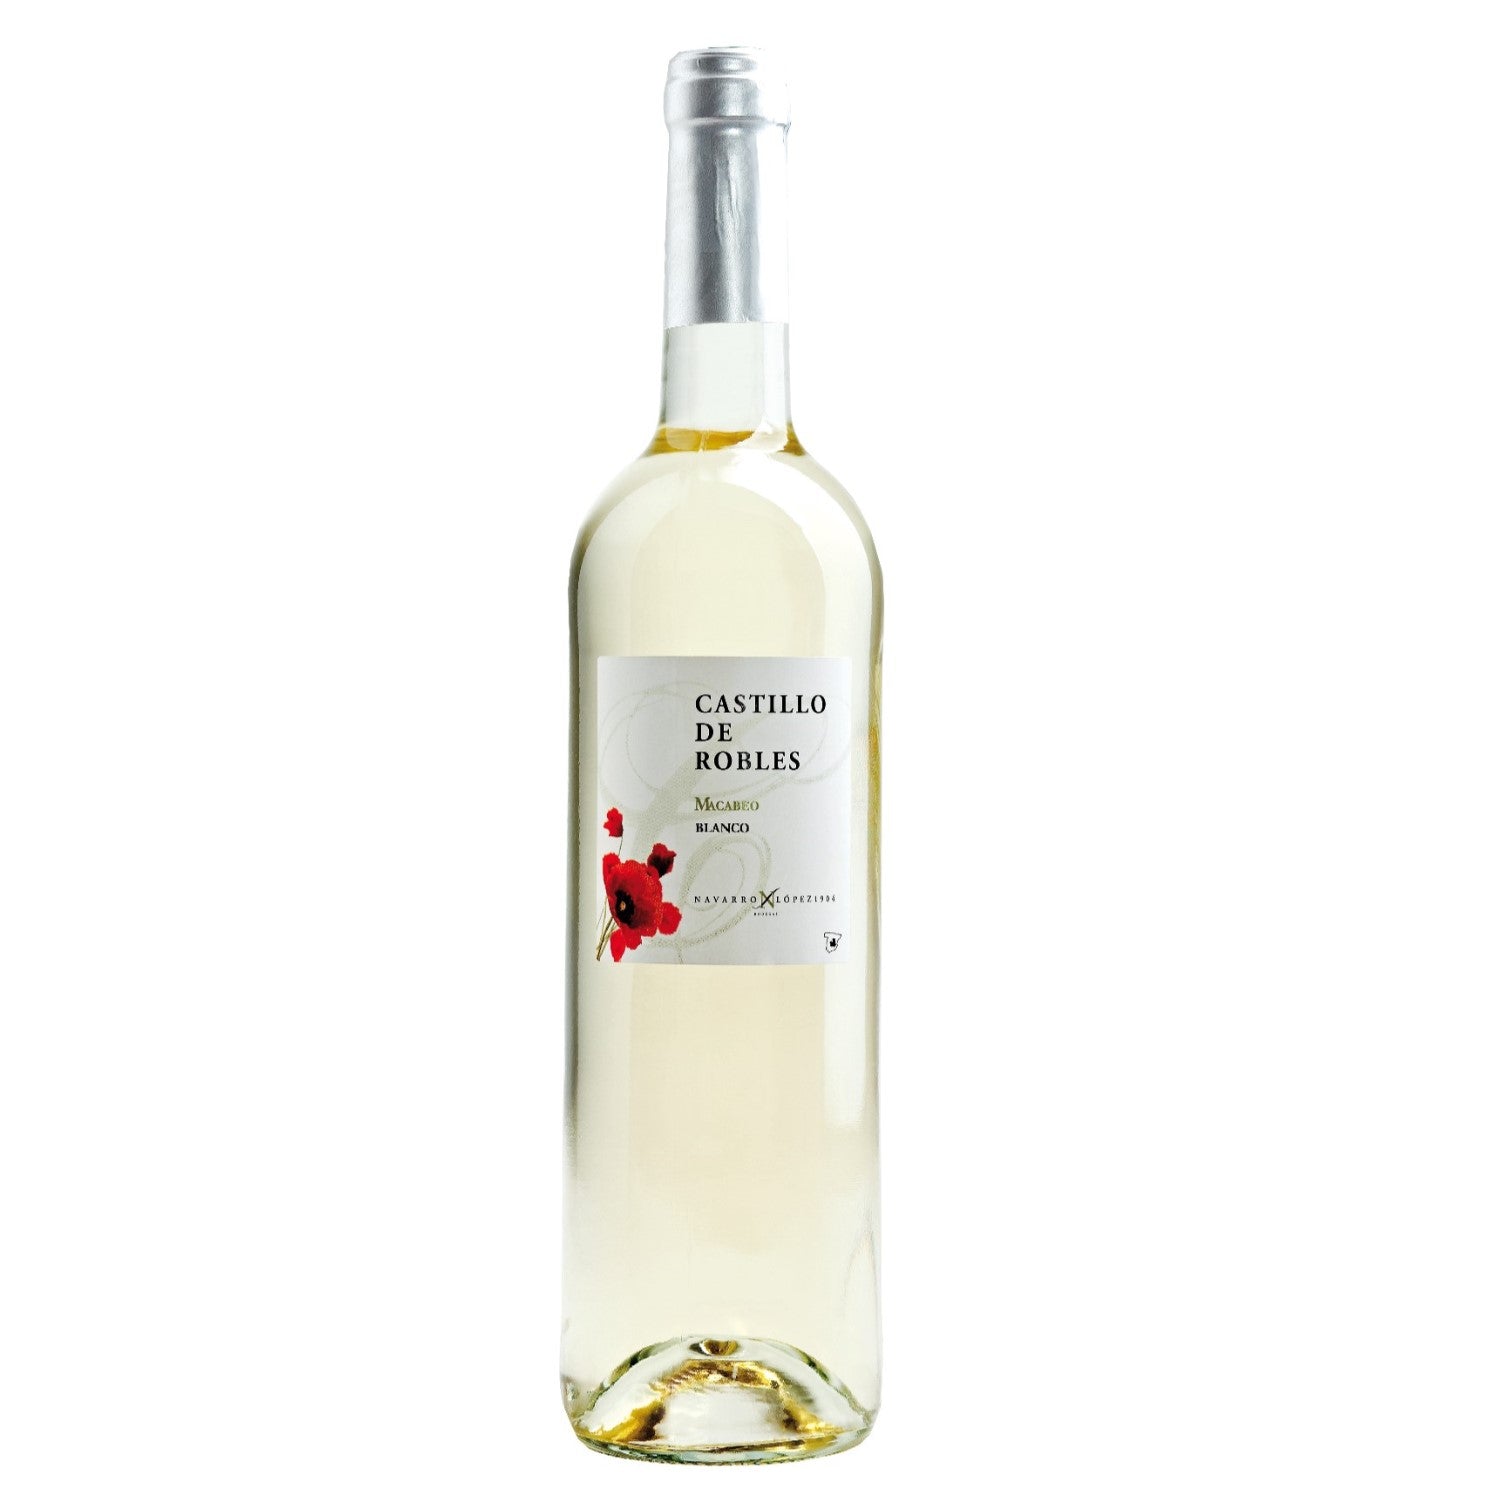 Castillo de Robles Macabeo Blanco VDT Castilla Weißwein Wein trocken Spanien (6 x 0.75l) - Versanel -